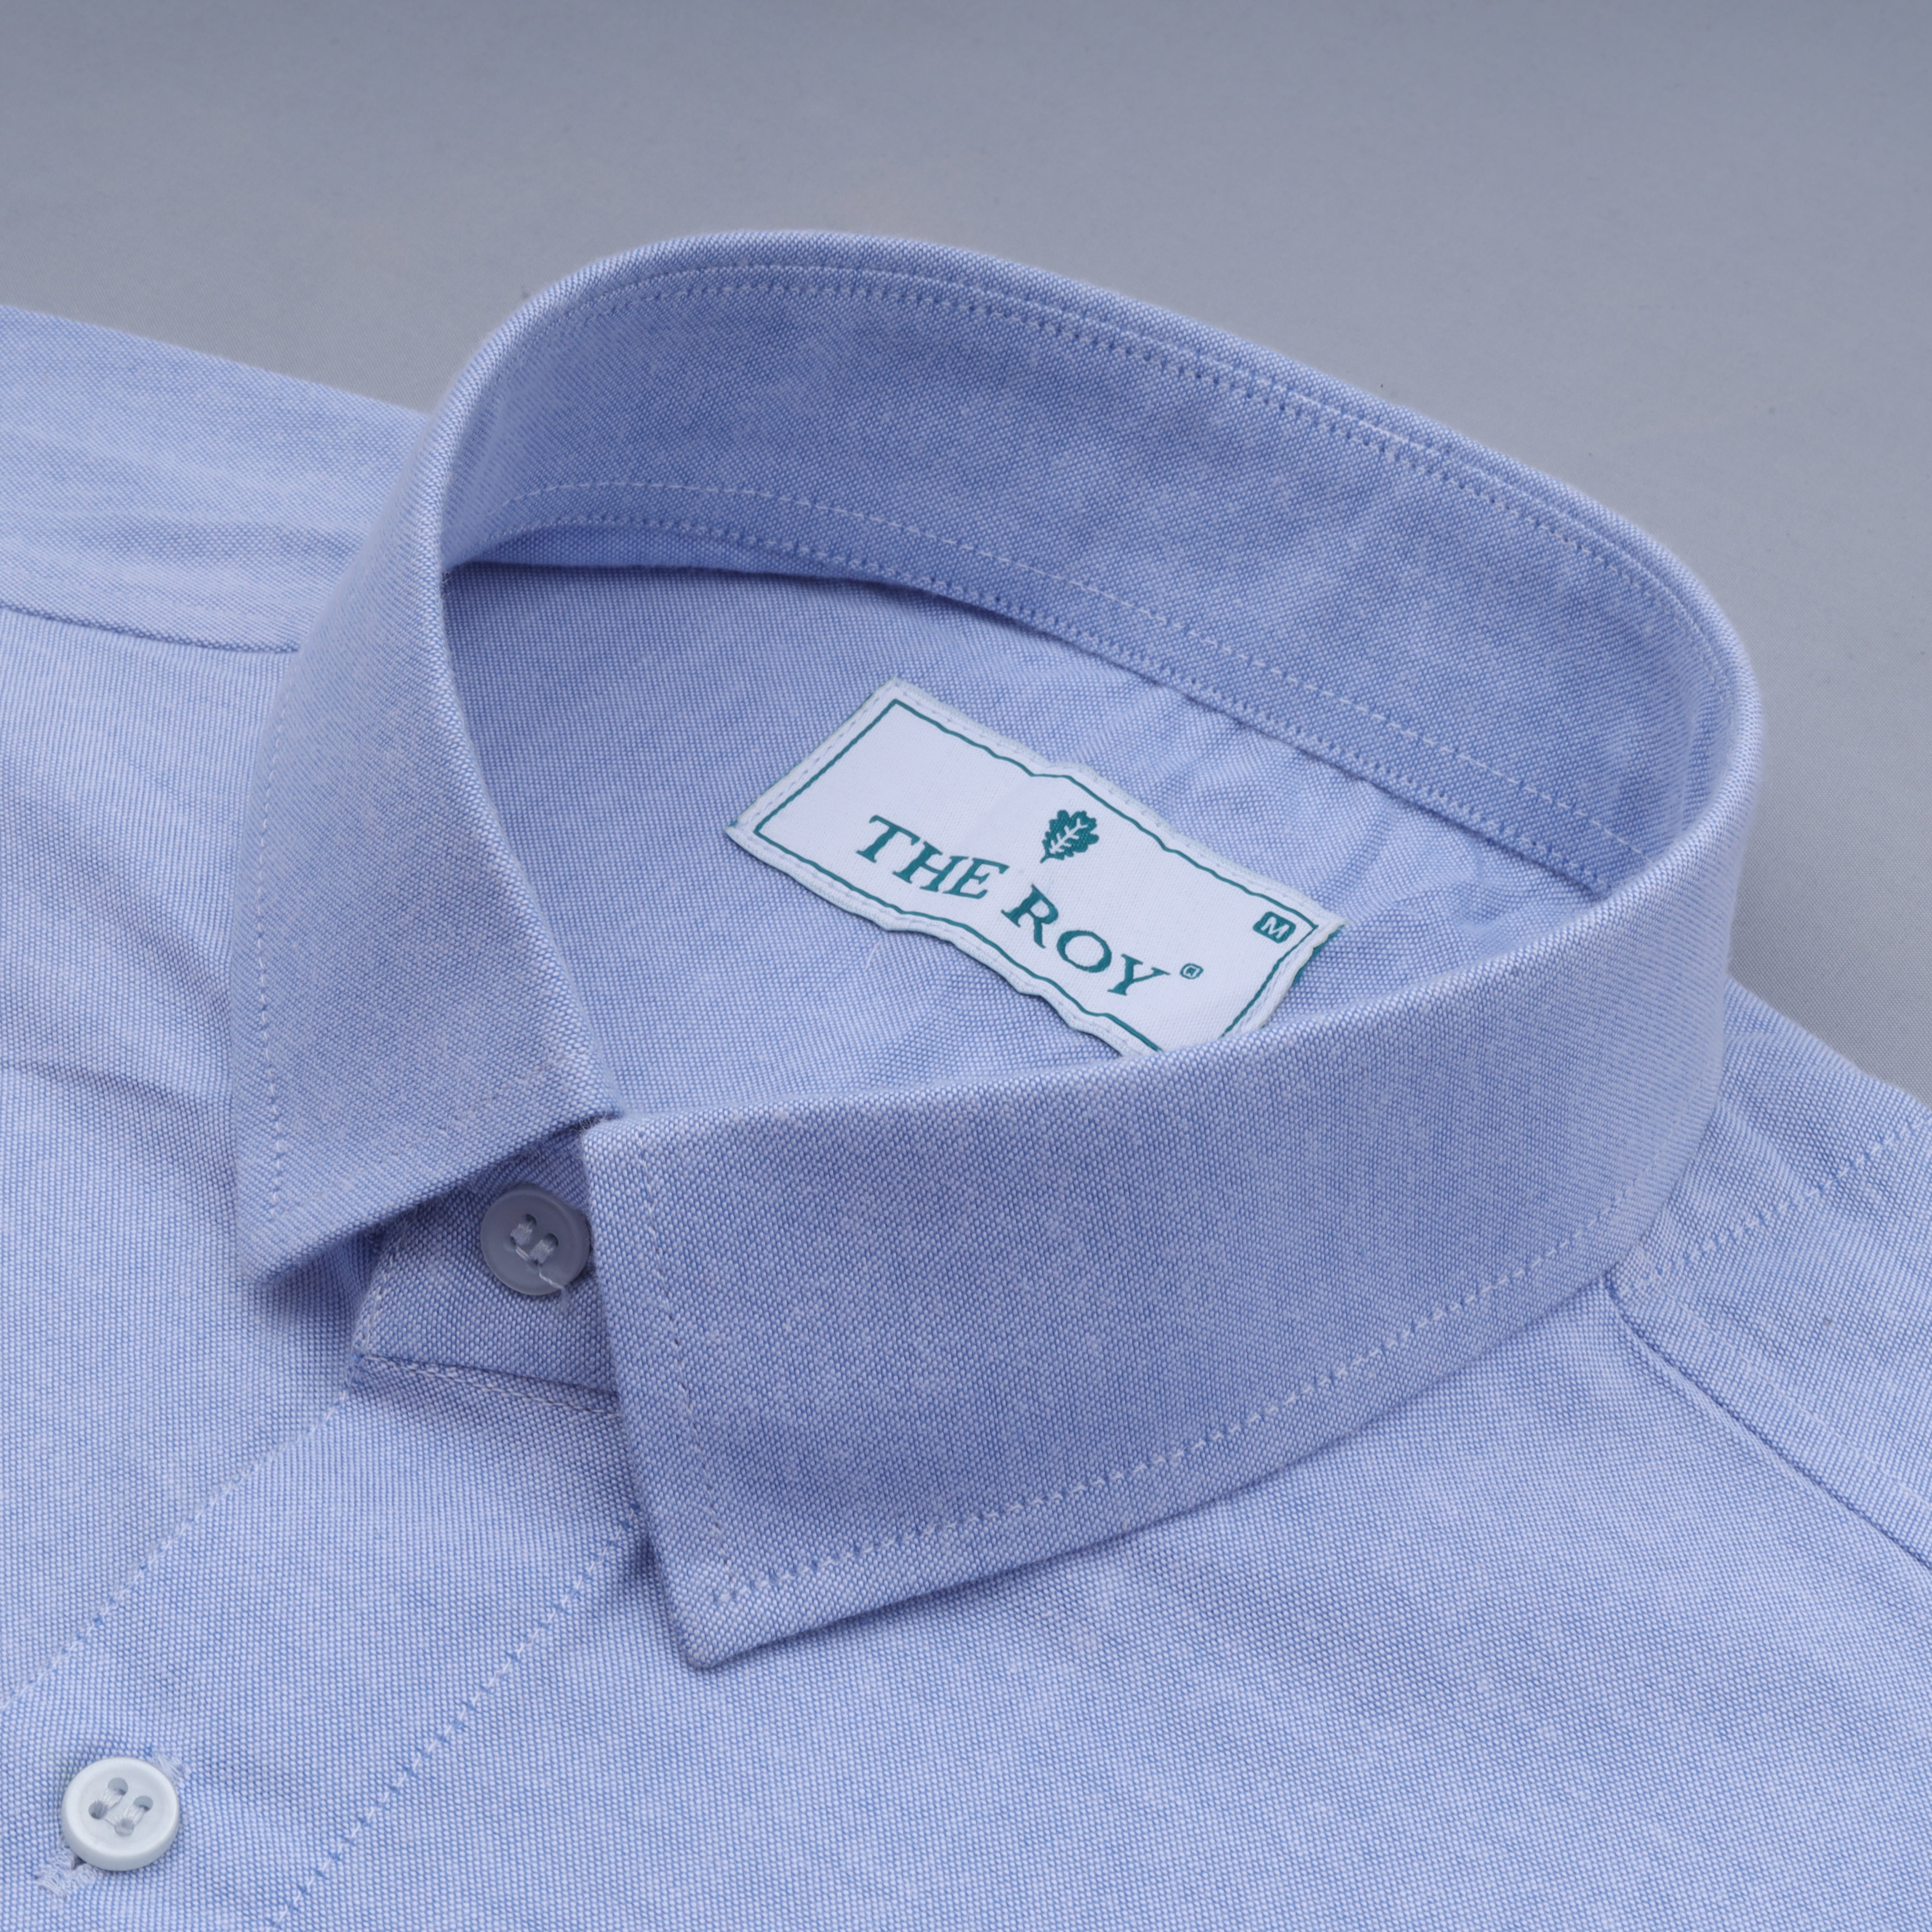 Blue Luxury Plain Cotton Shirt